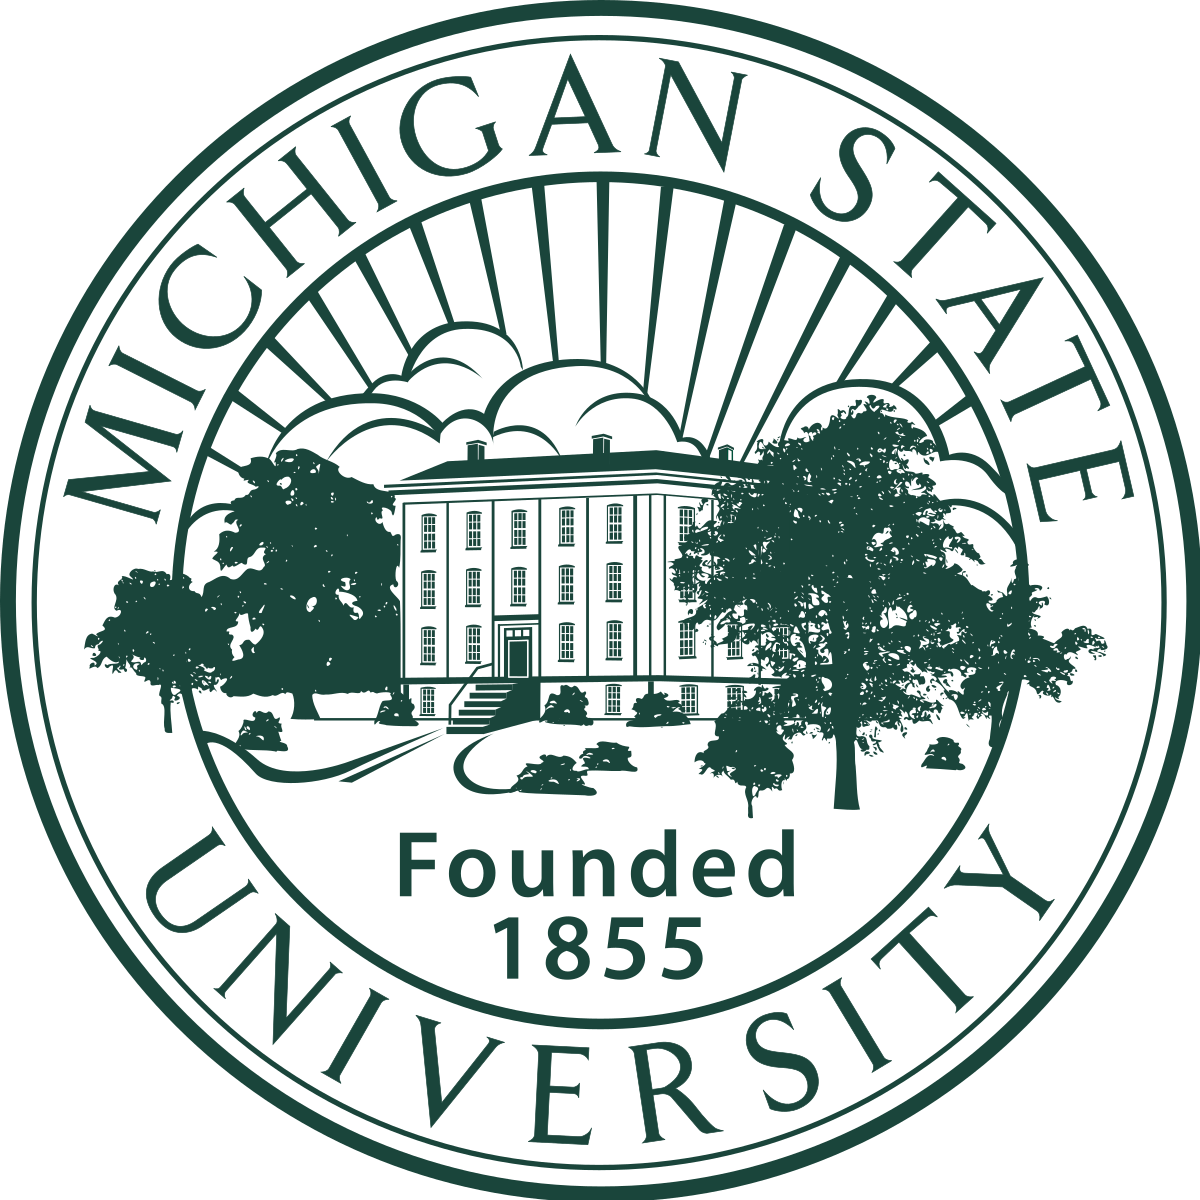 Programme de bourses africaines de l’Université d’État du Michigan 2020/2021 pour les étudiants africains